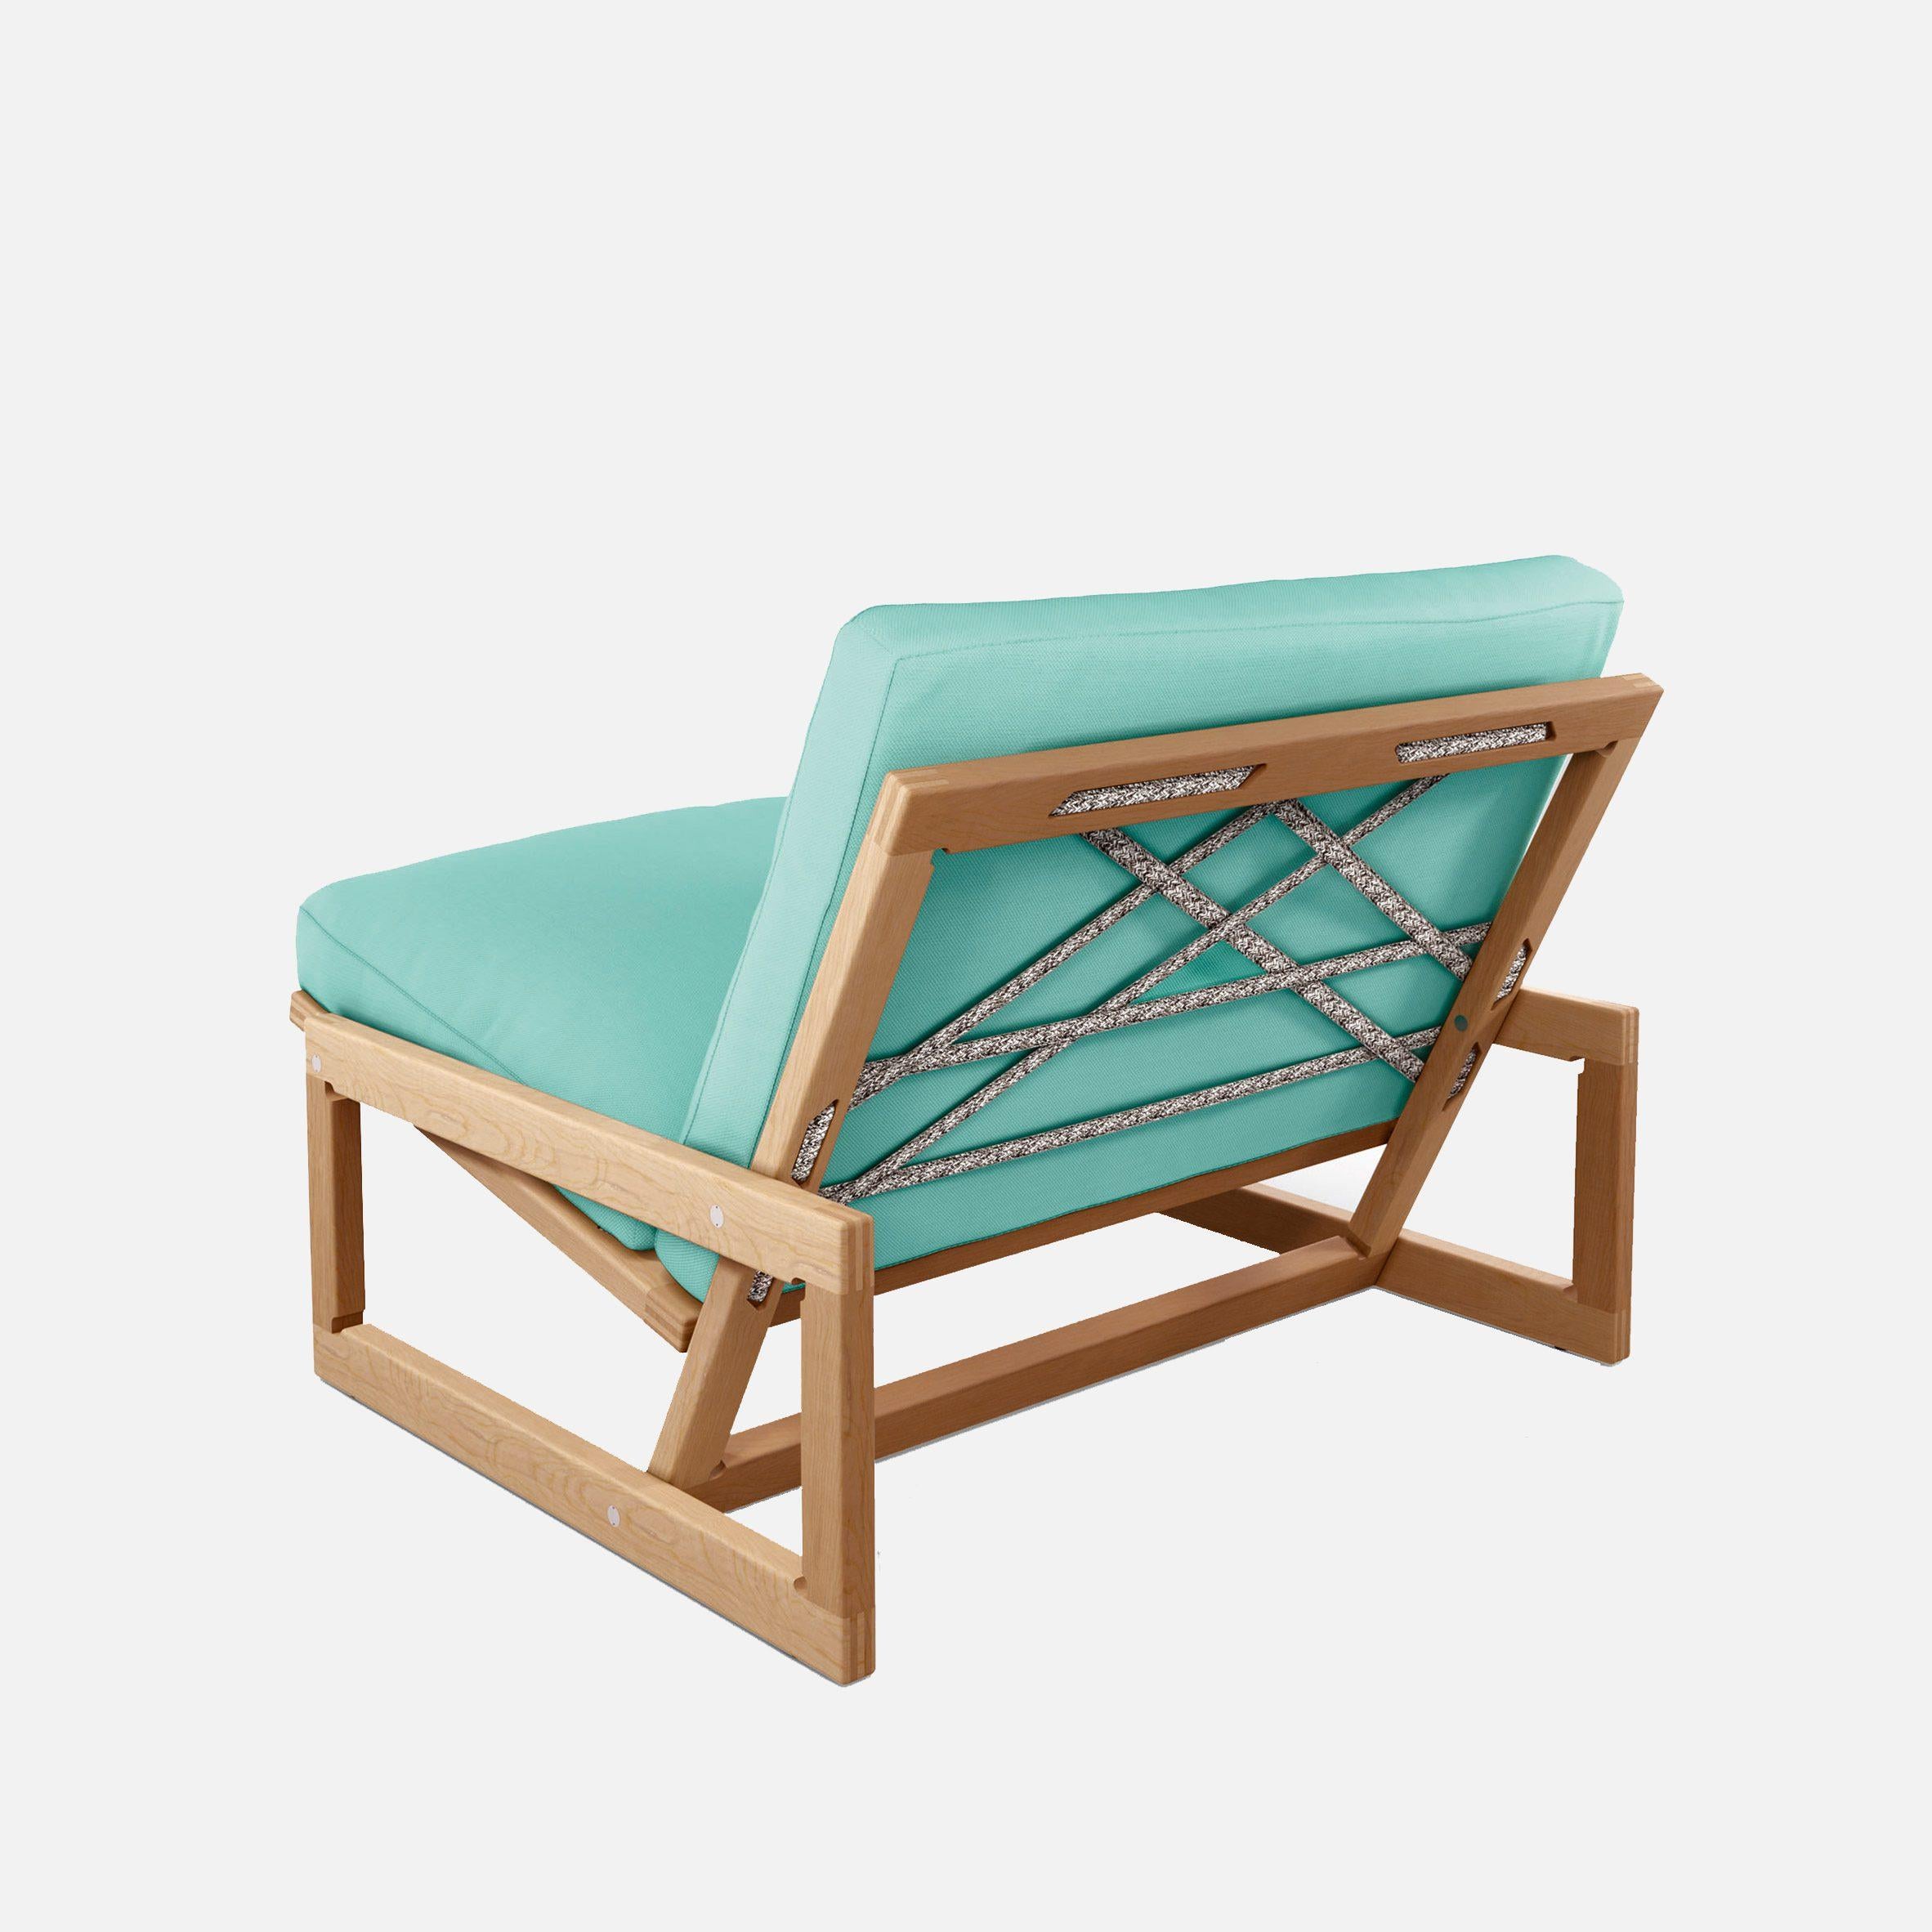 Ein stilvoller, minimalistischer Outdoor-Sessel für die jüngere Generation, der die typische Spontaneität eines Tages im Freien einlädt. 

1967 entwarfen Afra und Tobia Scarpa einen Stuhl, der eine aktive, dynamische Generation anspricht. Das